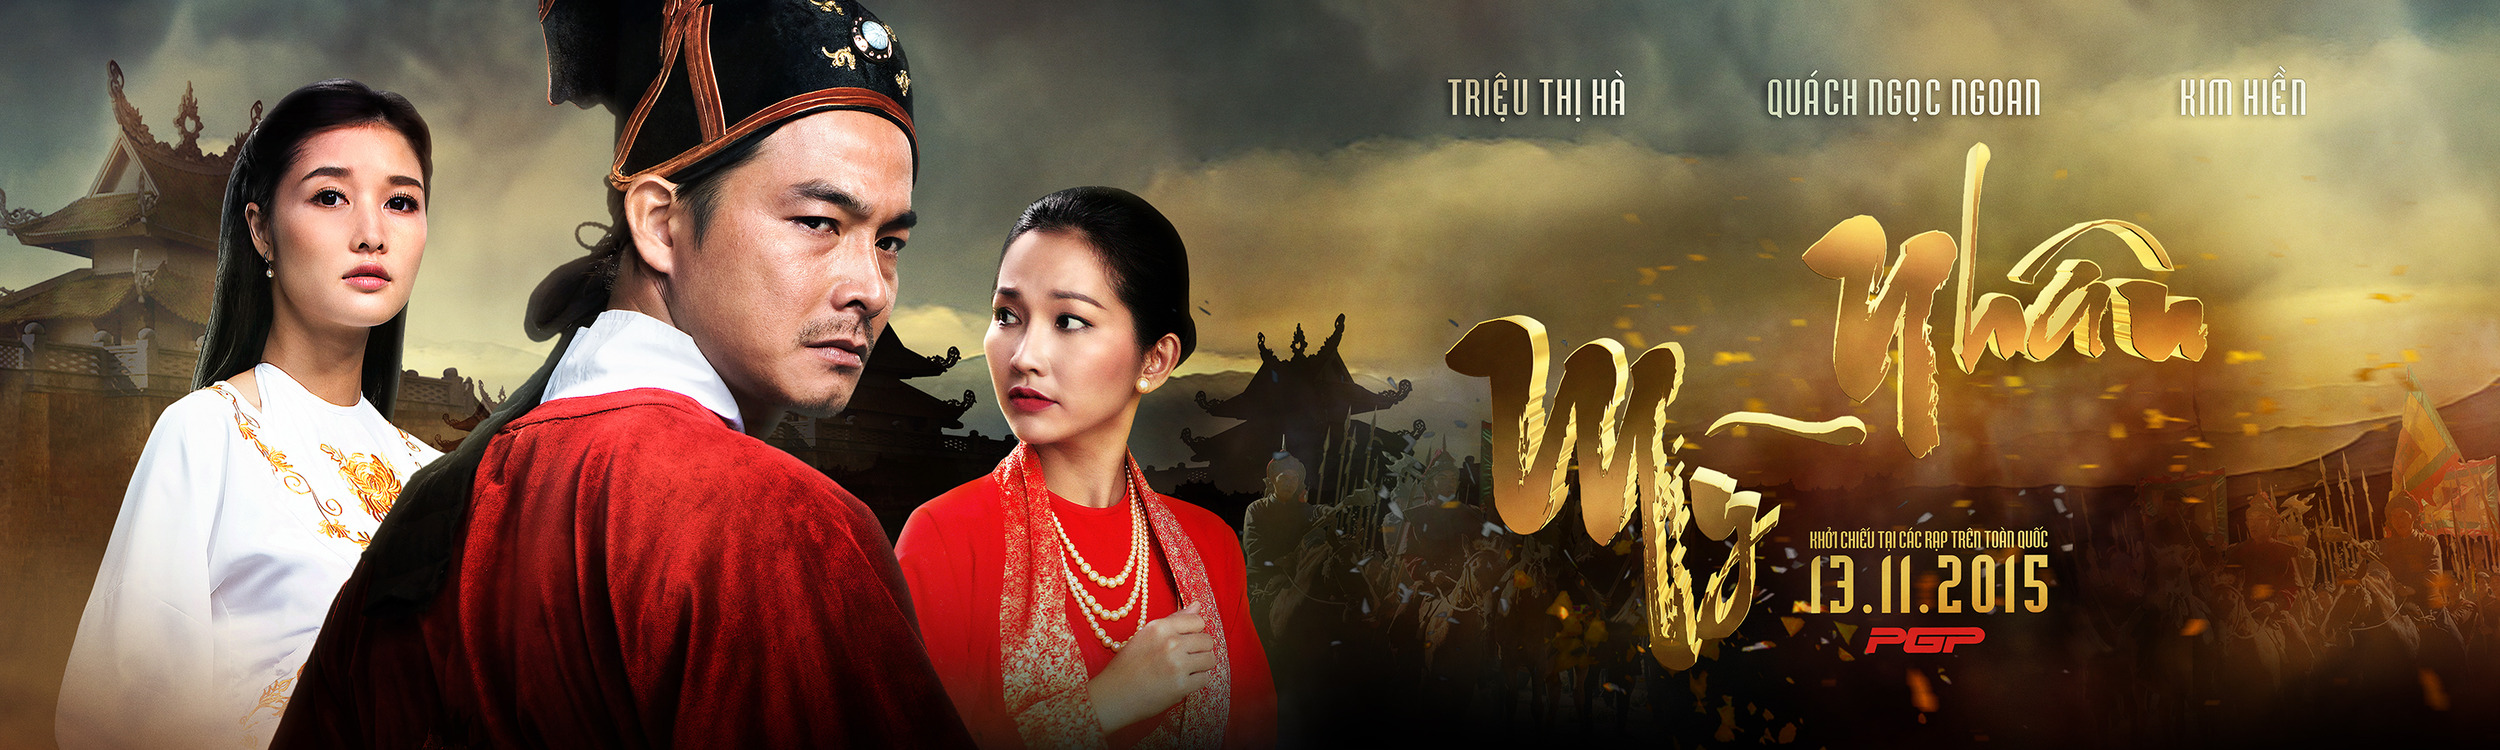 Mega Sized Movie Poster Image for Mỹ Nhân (#2 of 5)